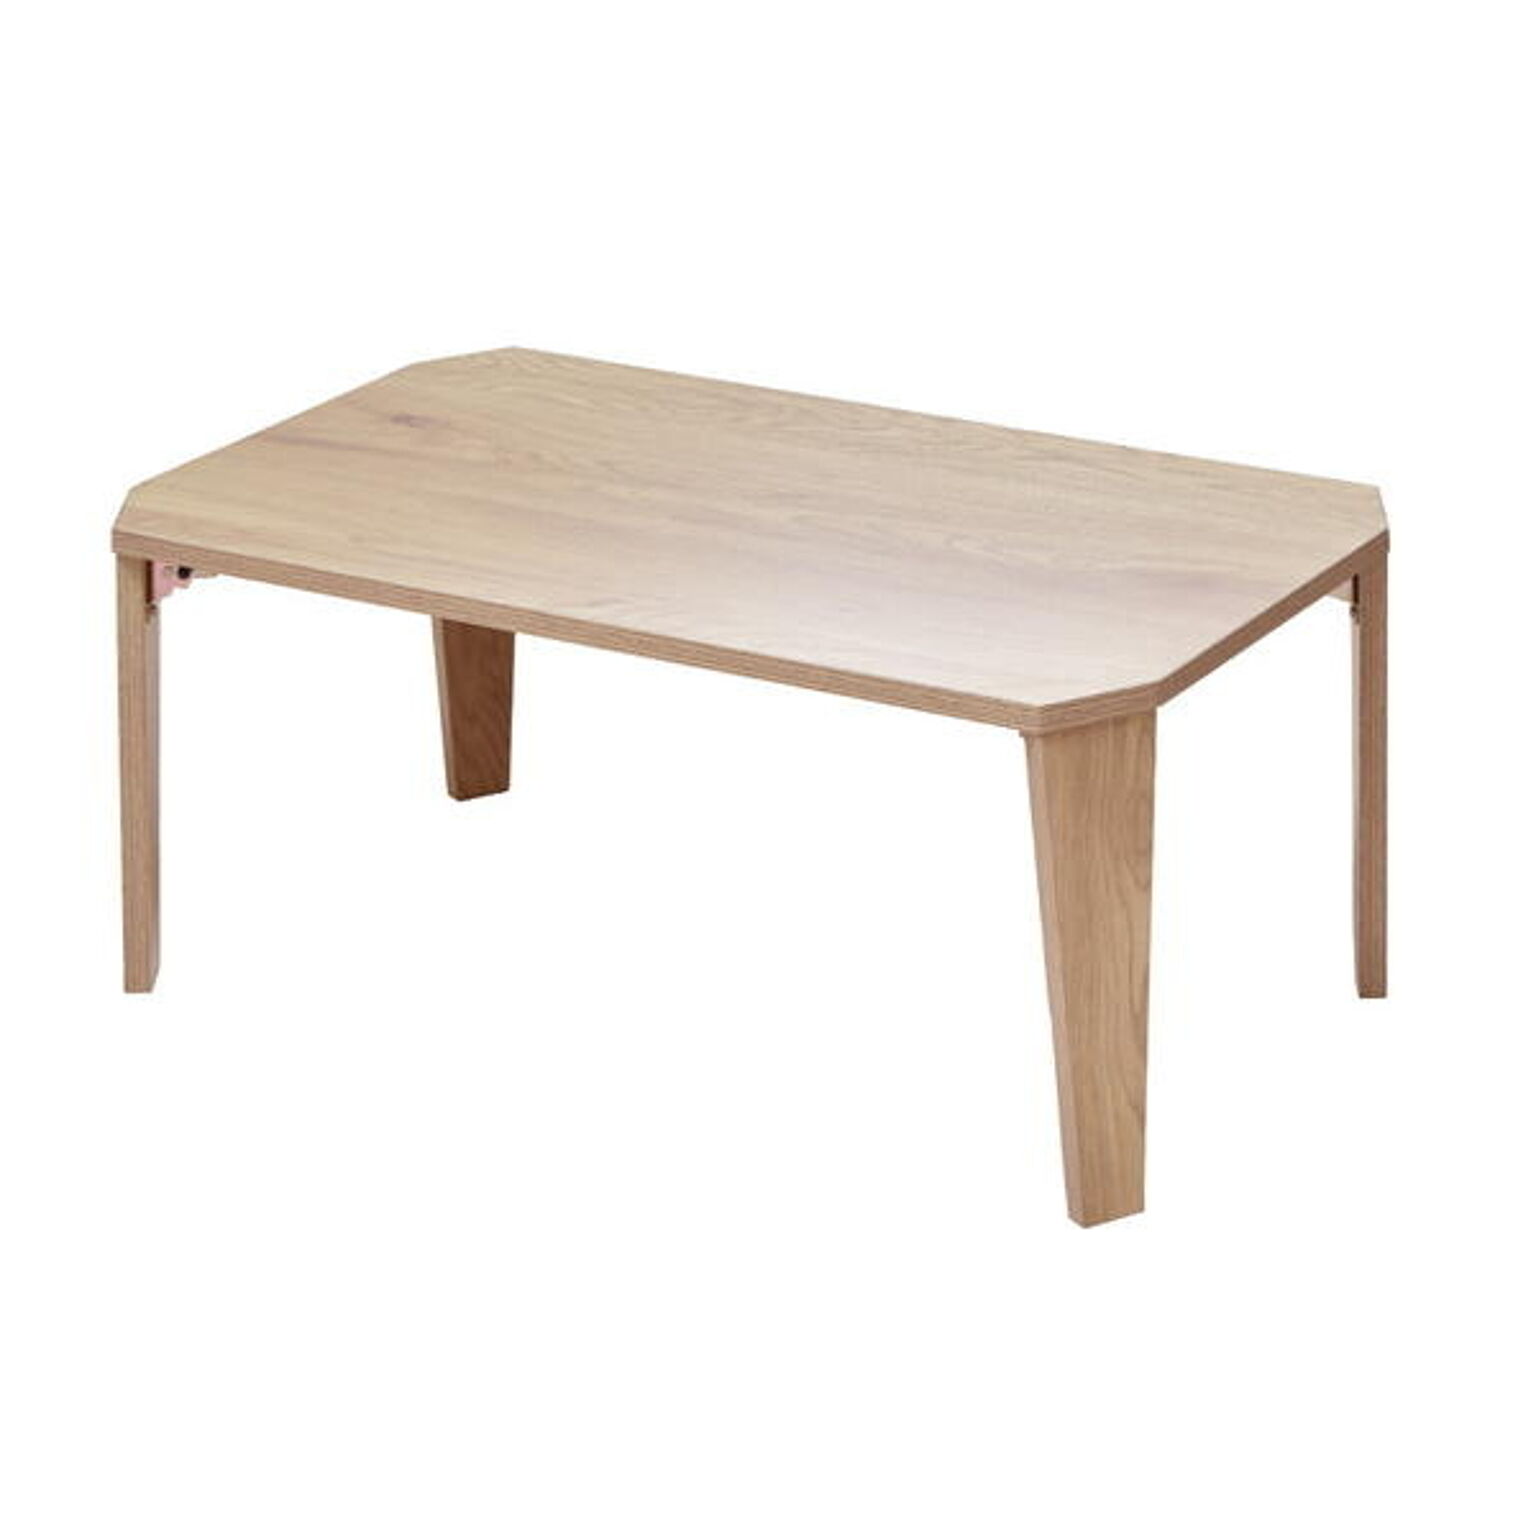 テーブル 折りたたみ 折り畳み 折りたたみテーブル 折れ脚テーブル ローテーブル センターテーブル コンパクト おしゃれ 木製 北欧 机 座卓 ちゃぶ台  折れ脚 長方形 コーヒーテーブル フミニテー